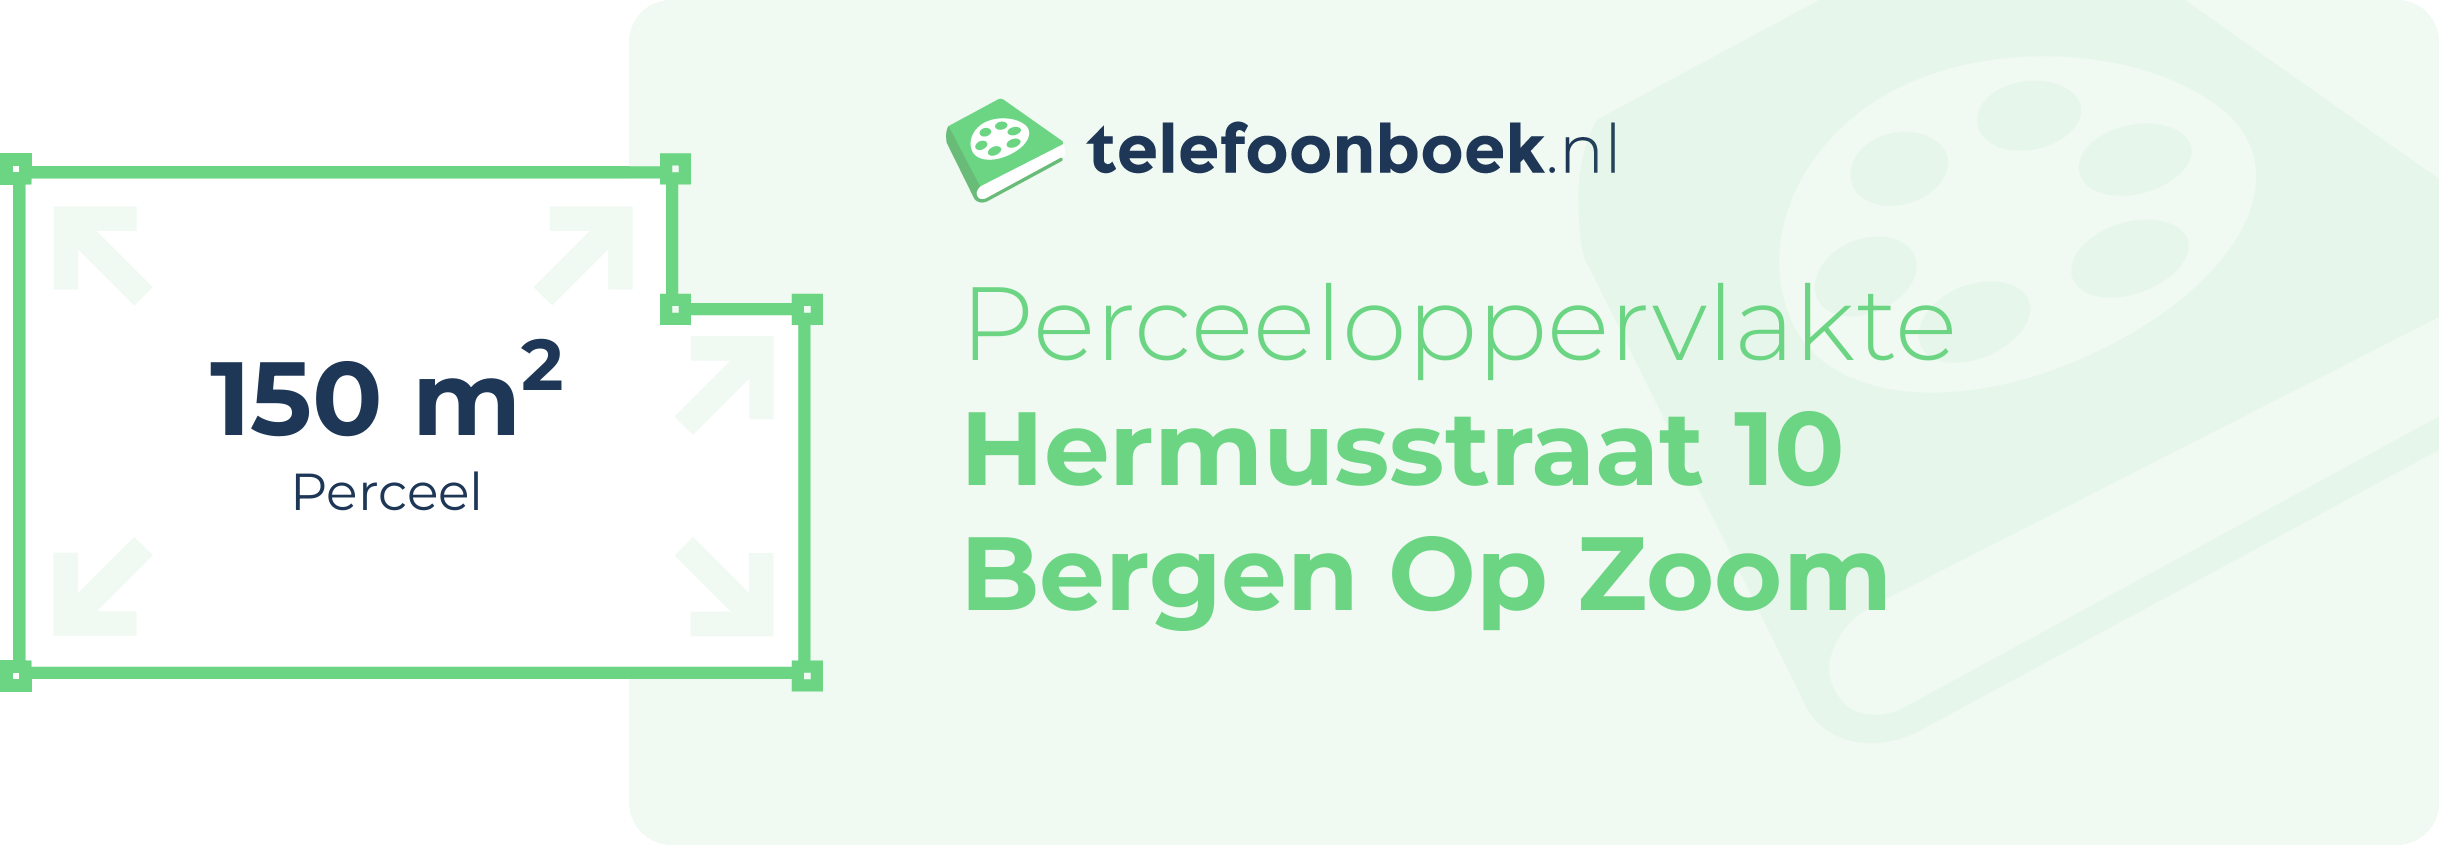 Perceeloppervlakte Hermusstraat 10 Bergen Op Zoom